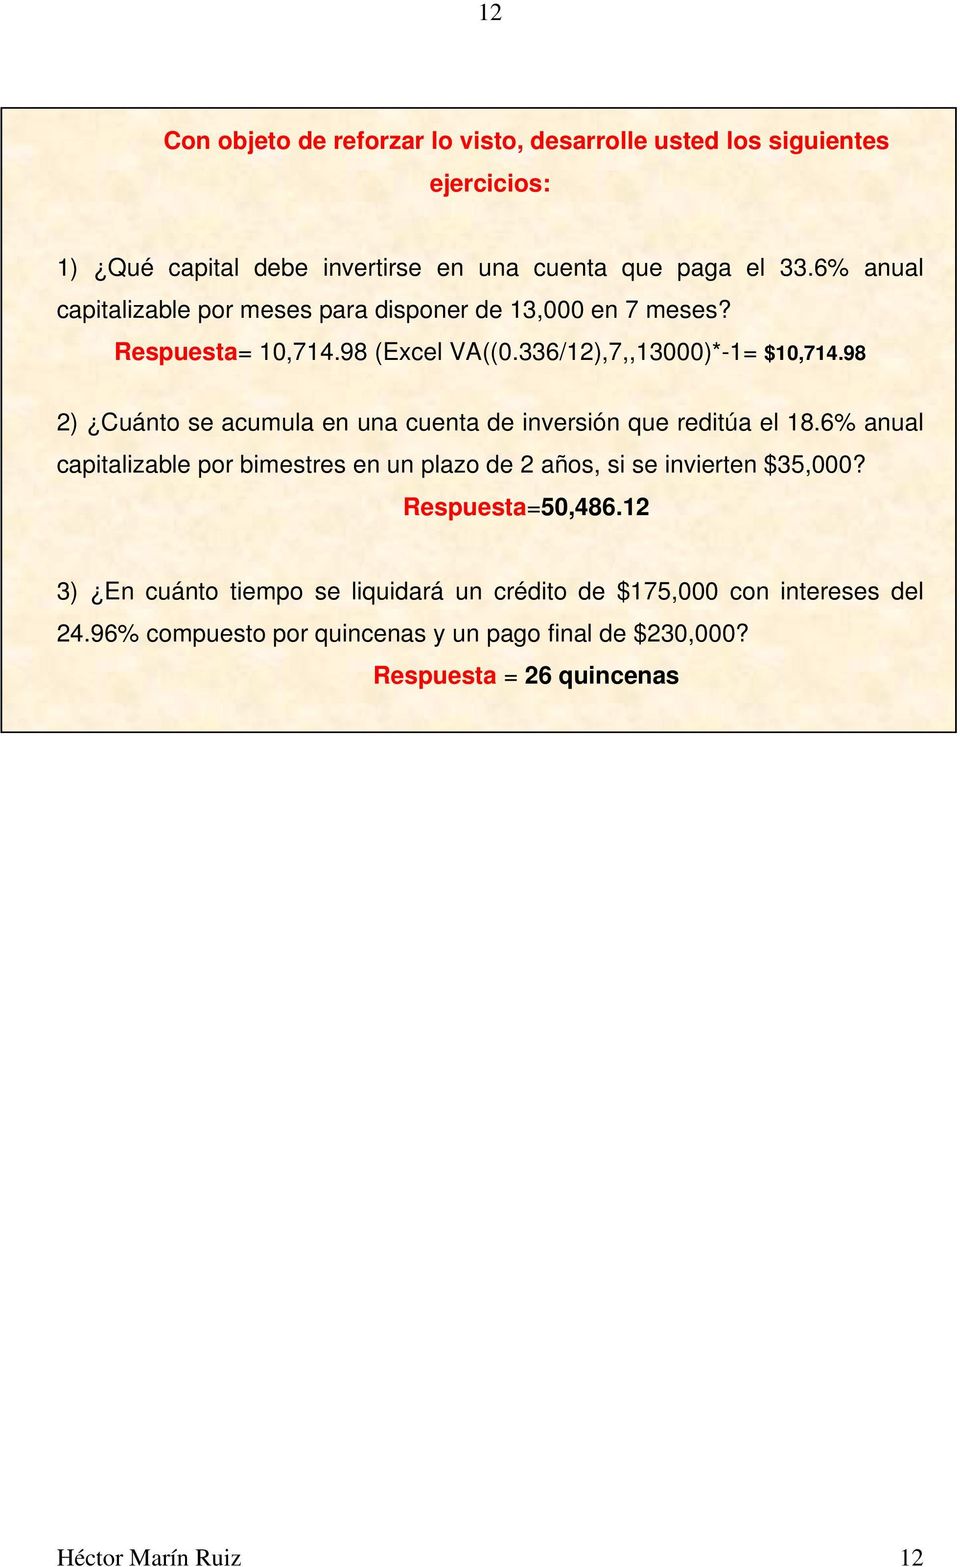 98 2) Cuánto se acumula en una cuenta de inversión que reditúa el 18.6% anual capitalizable por bimestres en un plazo de 2 años, si se invierten $35,000?